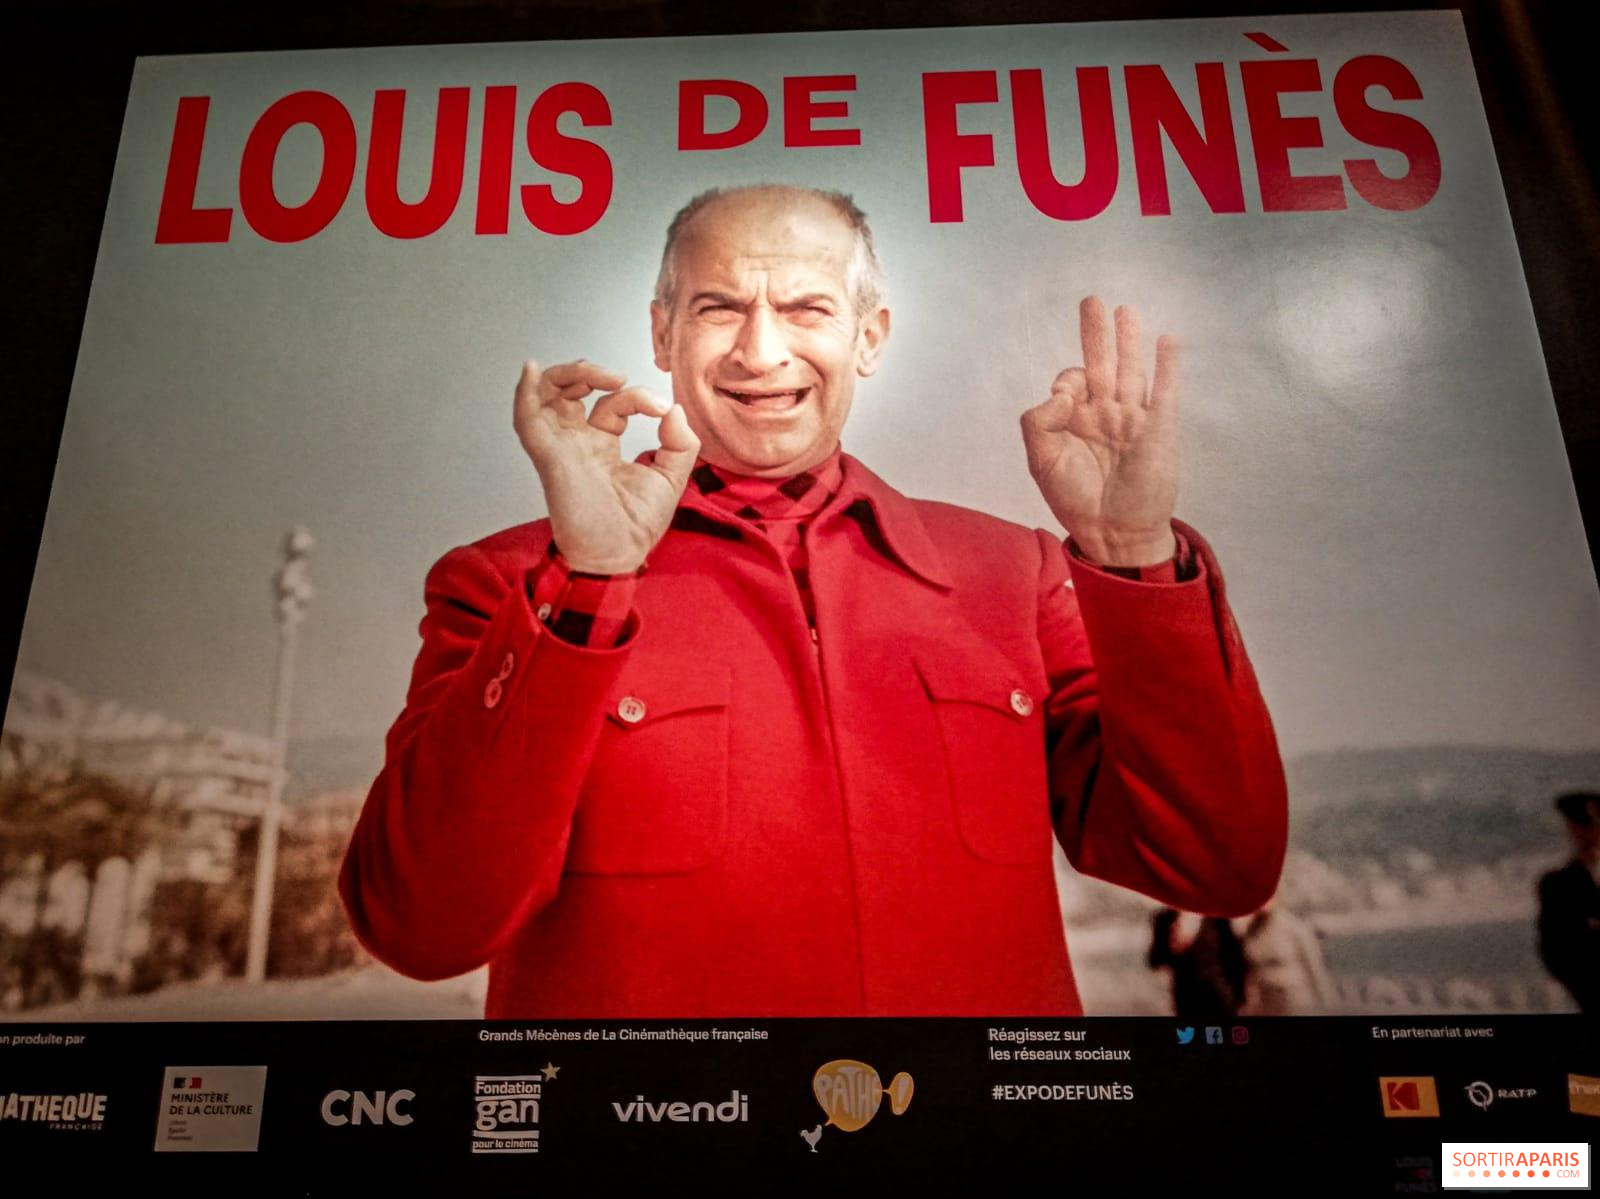 Meilleures Affiches Film Classique Français Louis de Funès